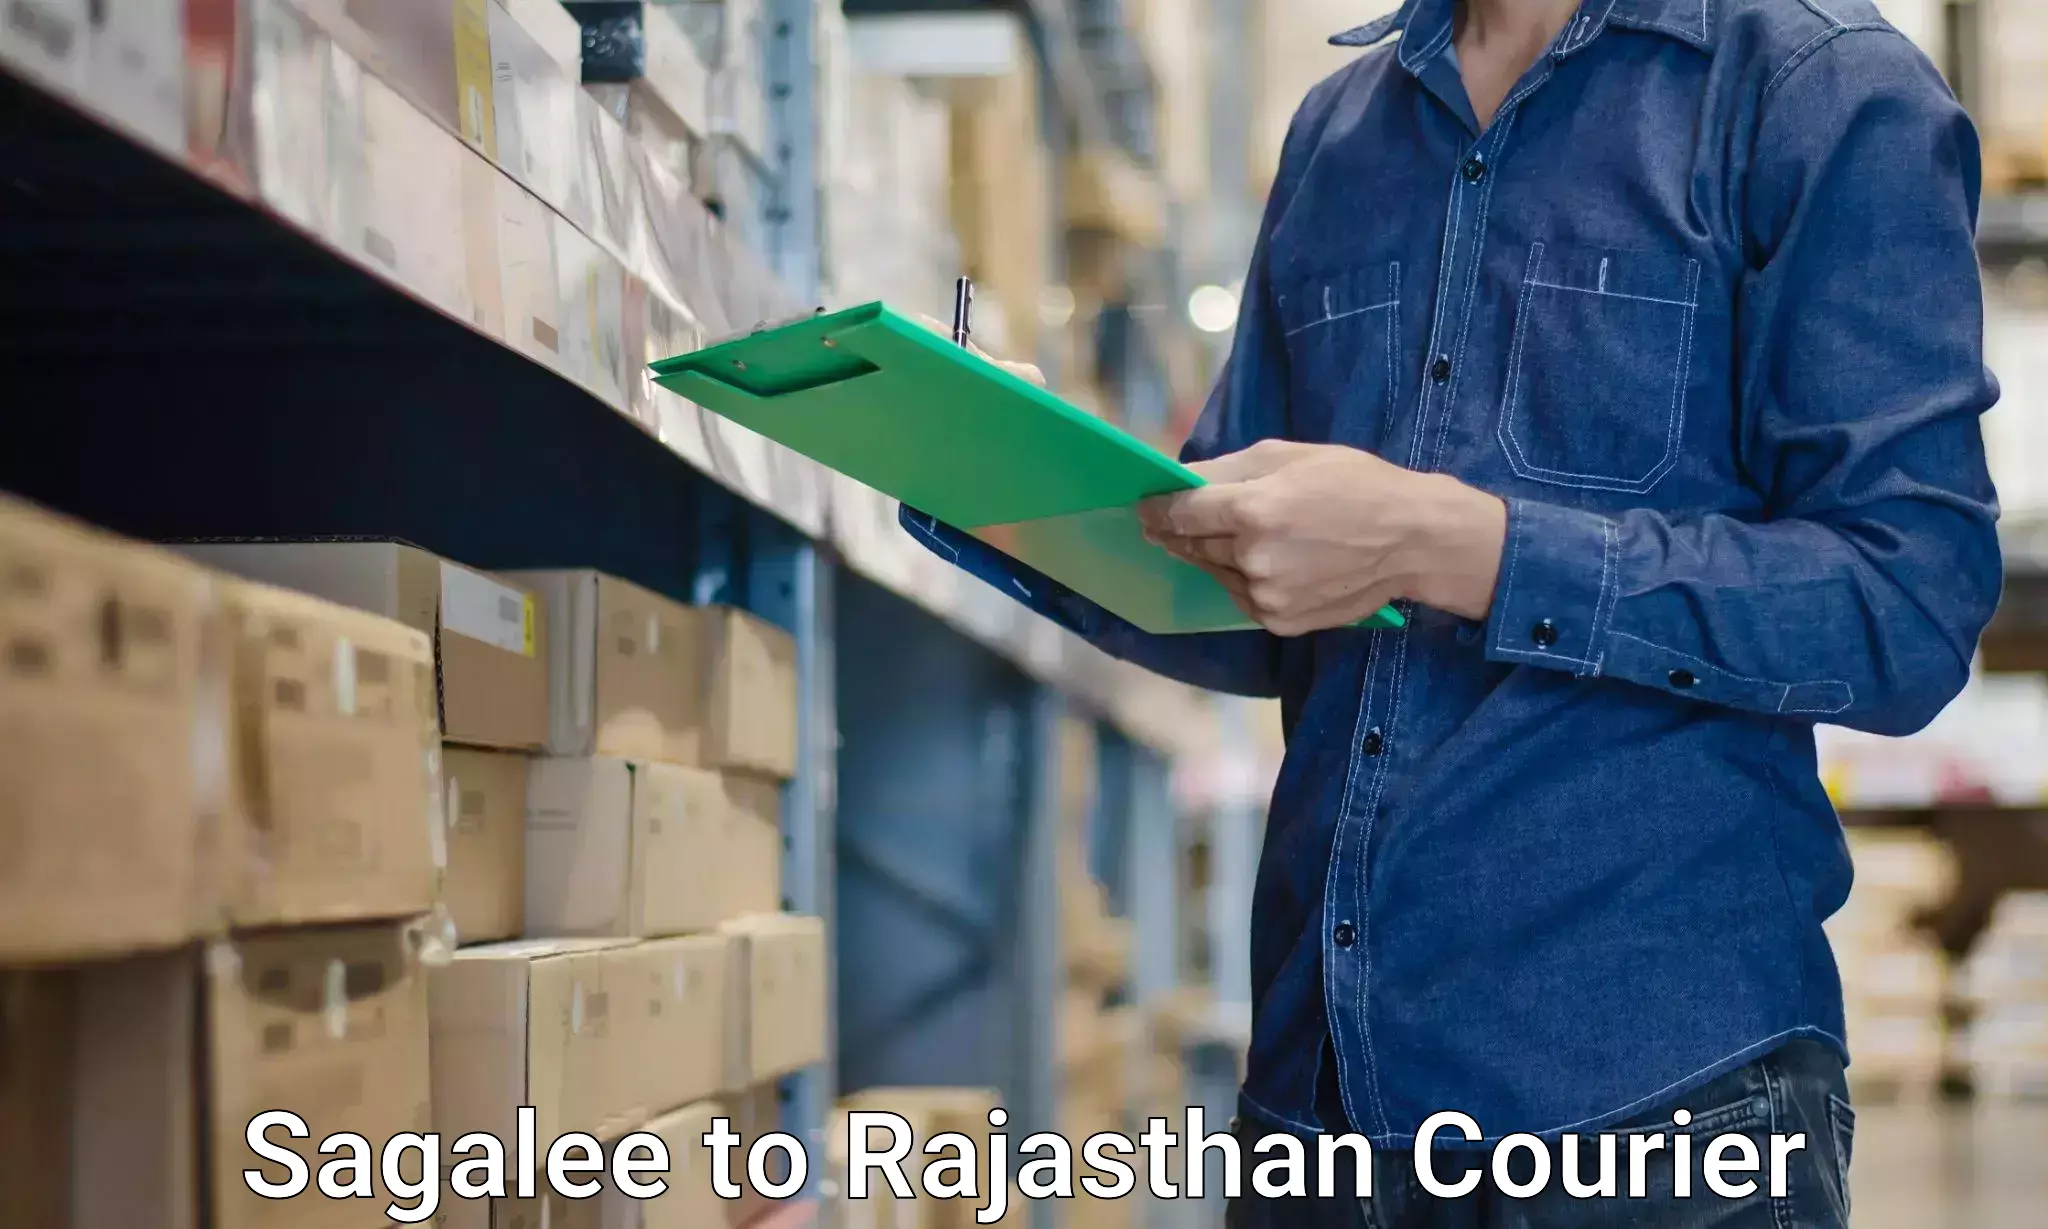 Furniture moving plans Sagalee to Rajasthan